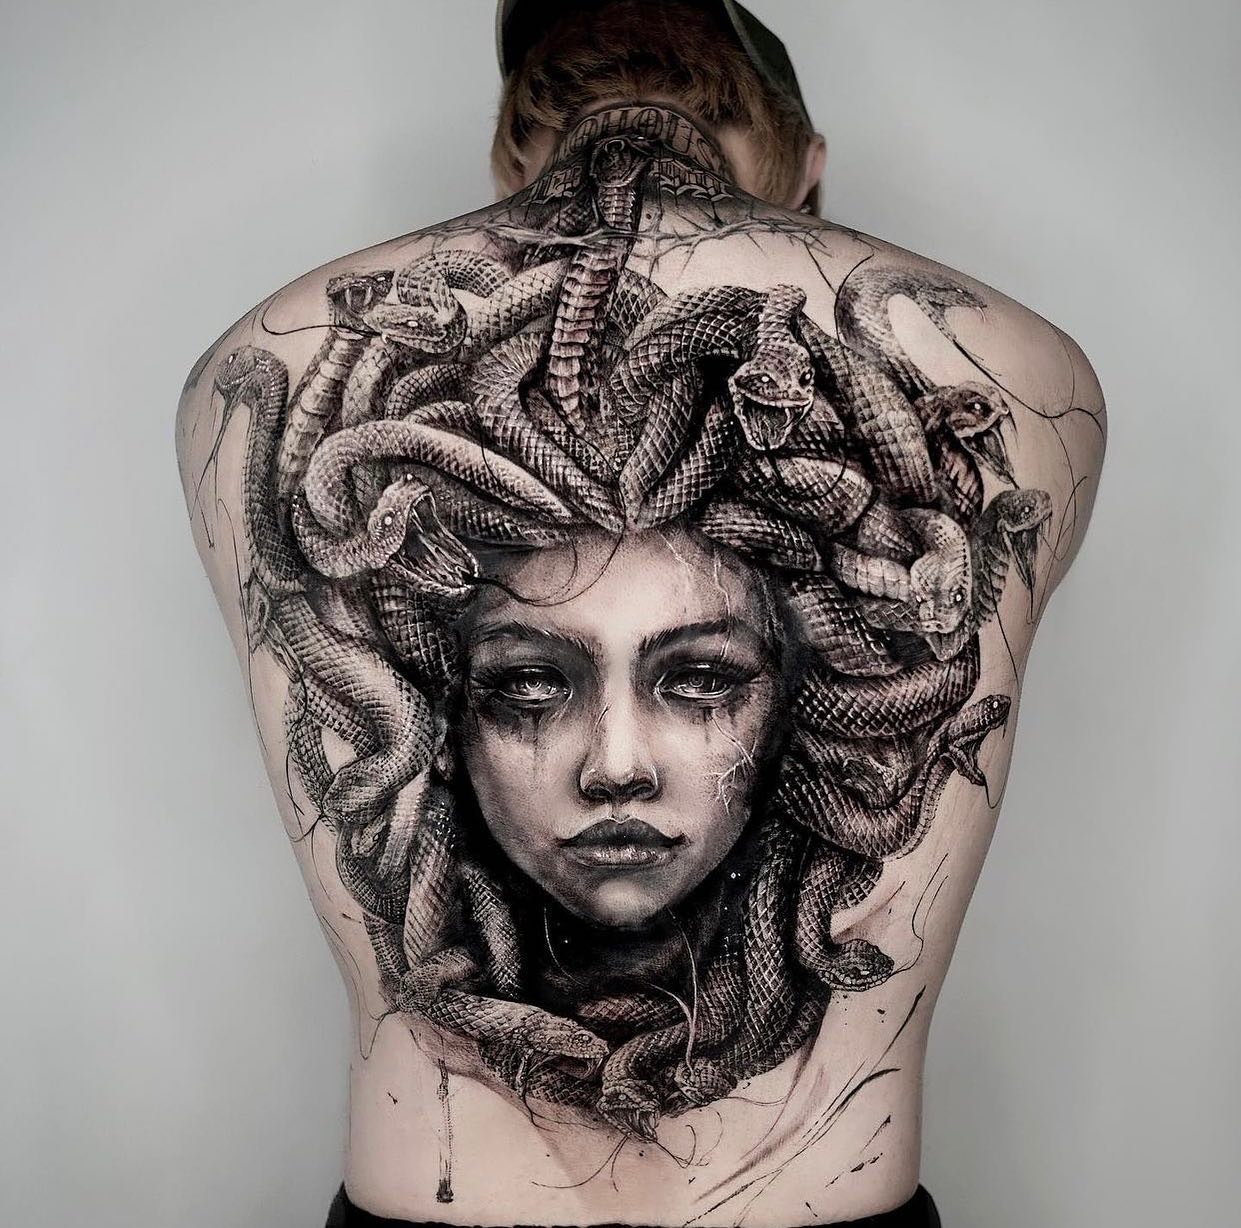 Tatuaje de Medusa de gran tamaño en la espalda.